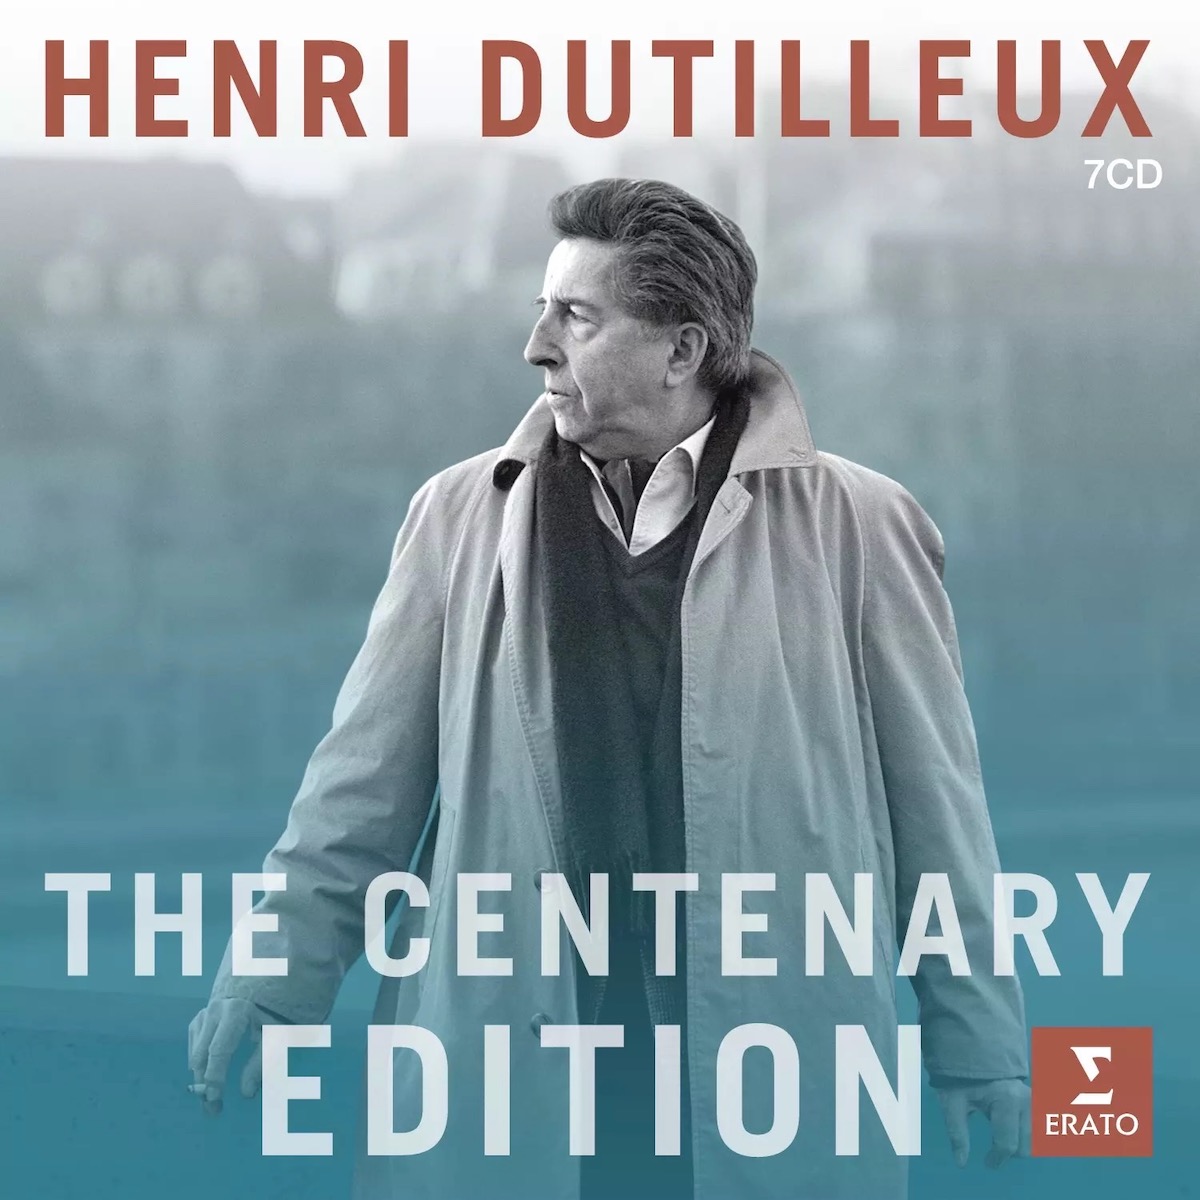 Henri Dutilleux, The Centenary Edition